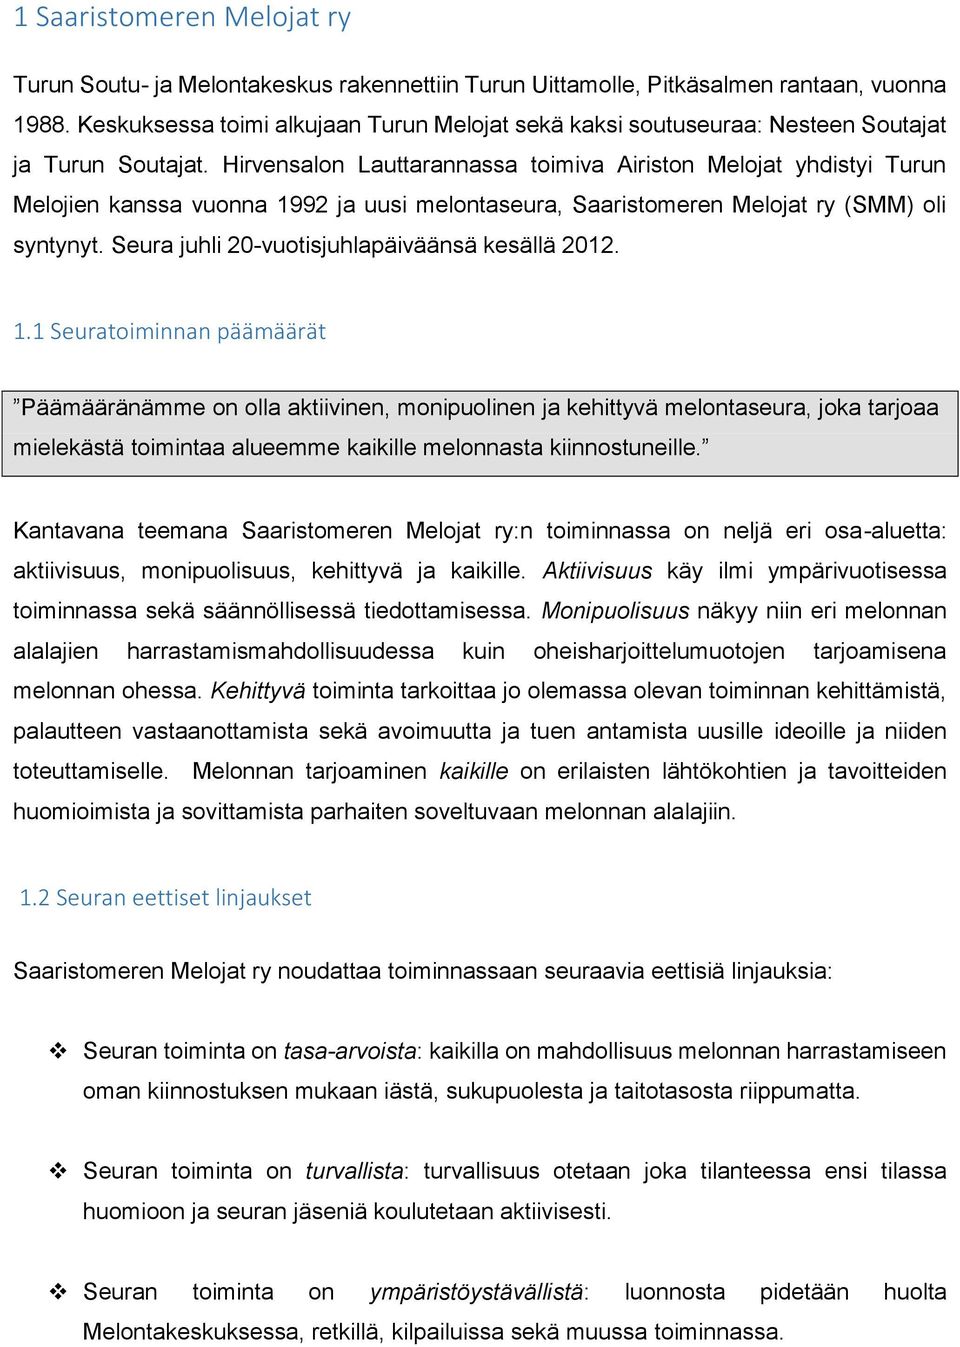 Hirvensalon Lauttarannassa toimiva Airiston Melojat yhdistyi Turun Melojien kanssa vuonna 1992 ja uusi melontaseura, Saaristomeren Melojat ry (SMM) oli syntynyt.